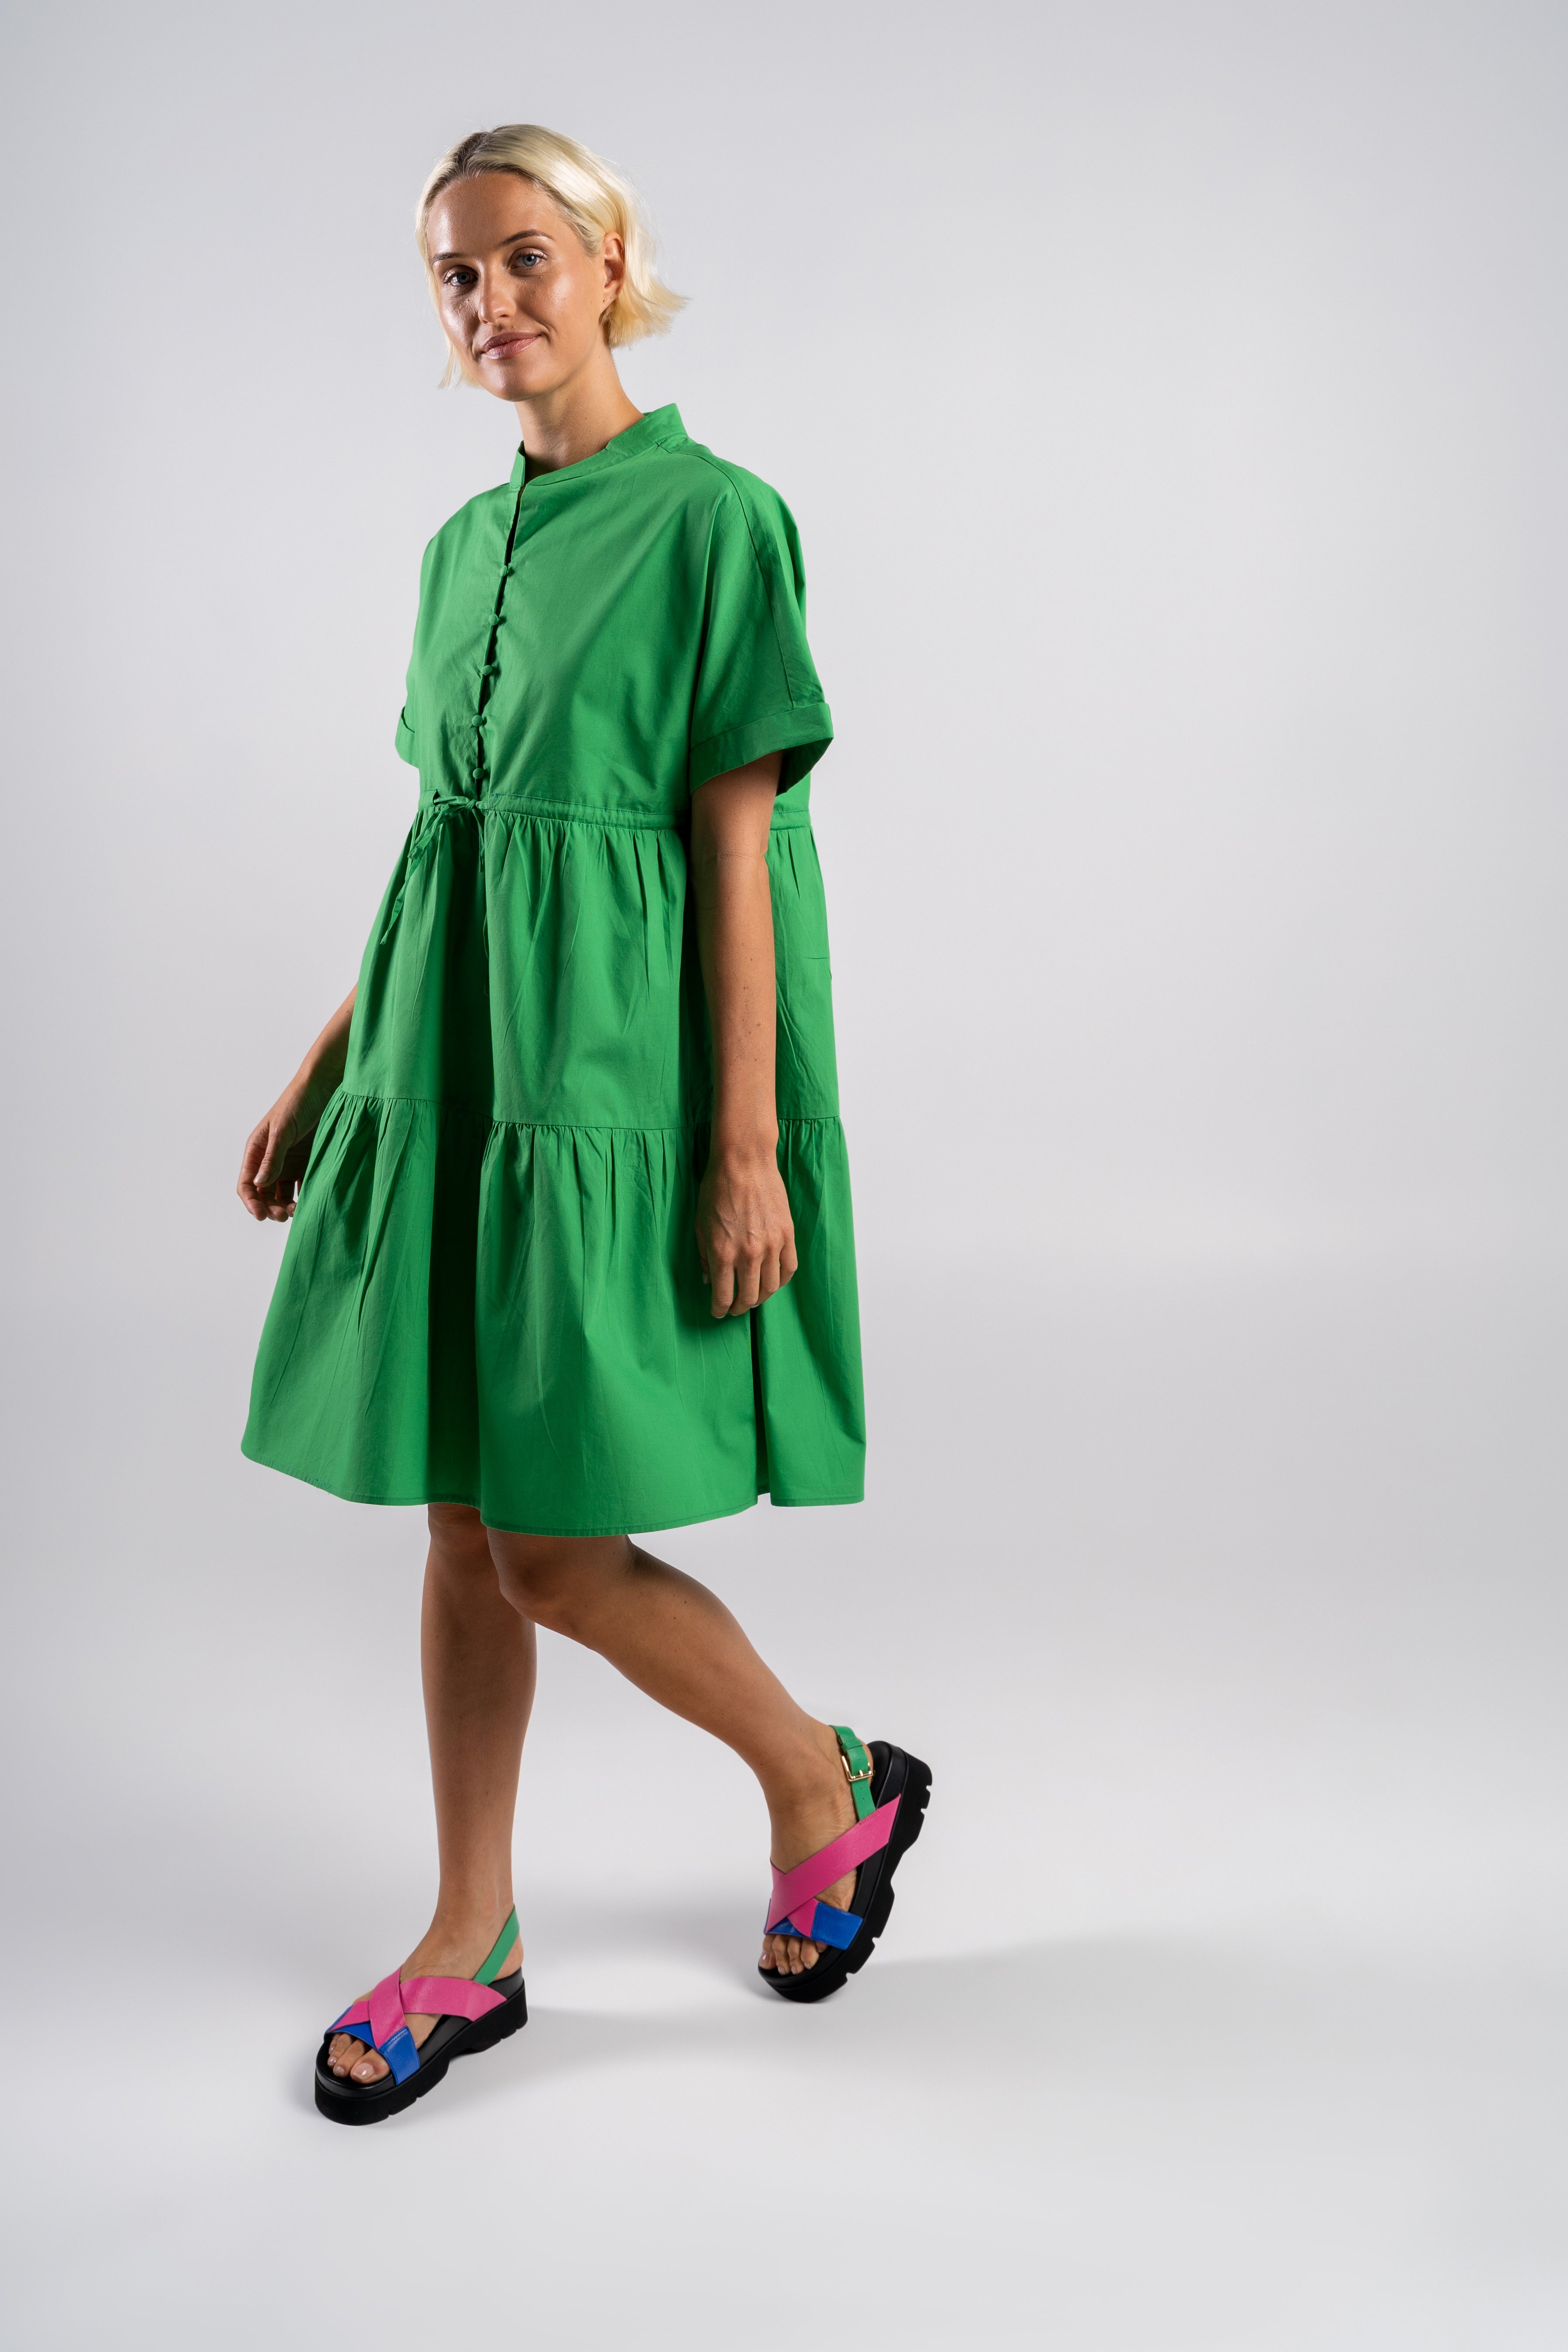 Wear Colour Short Sleeve Tiered Dress - Green